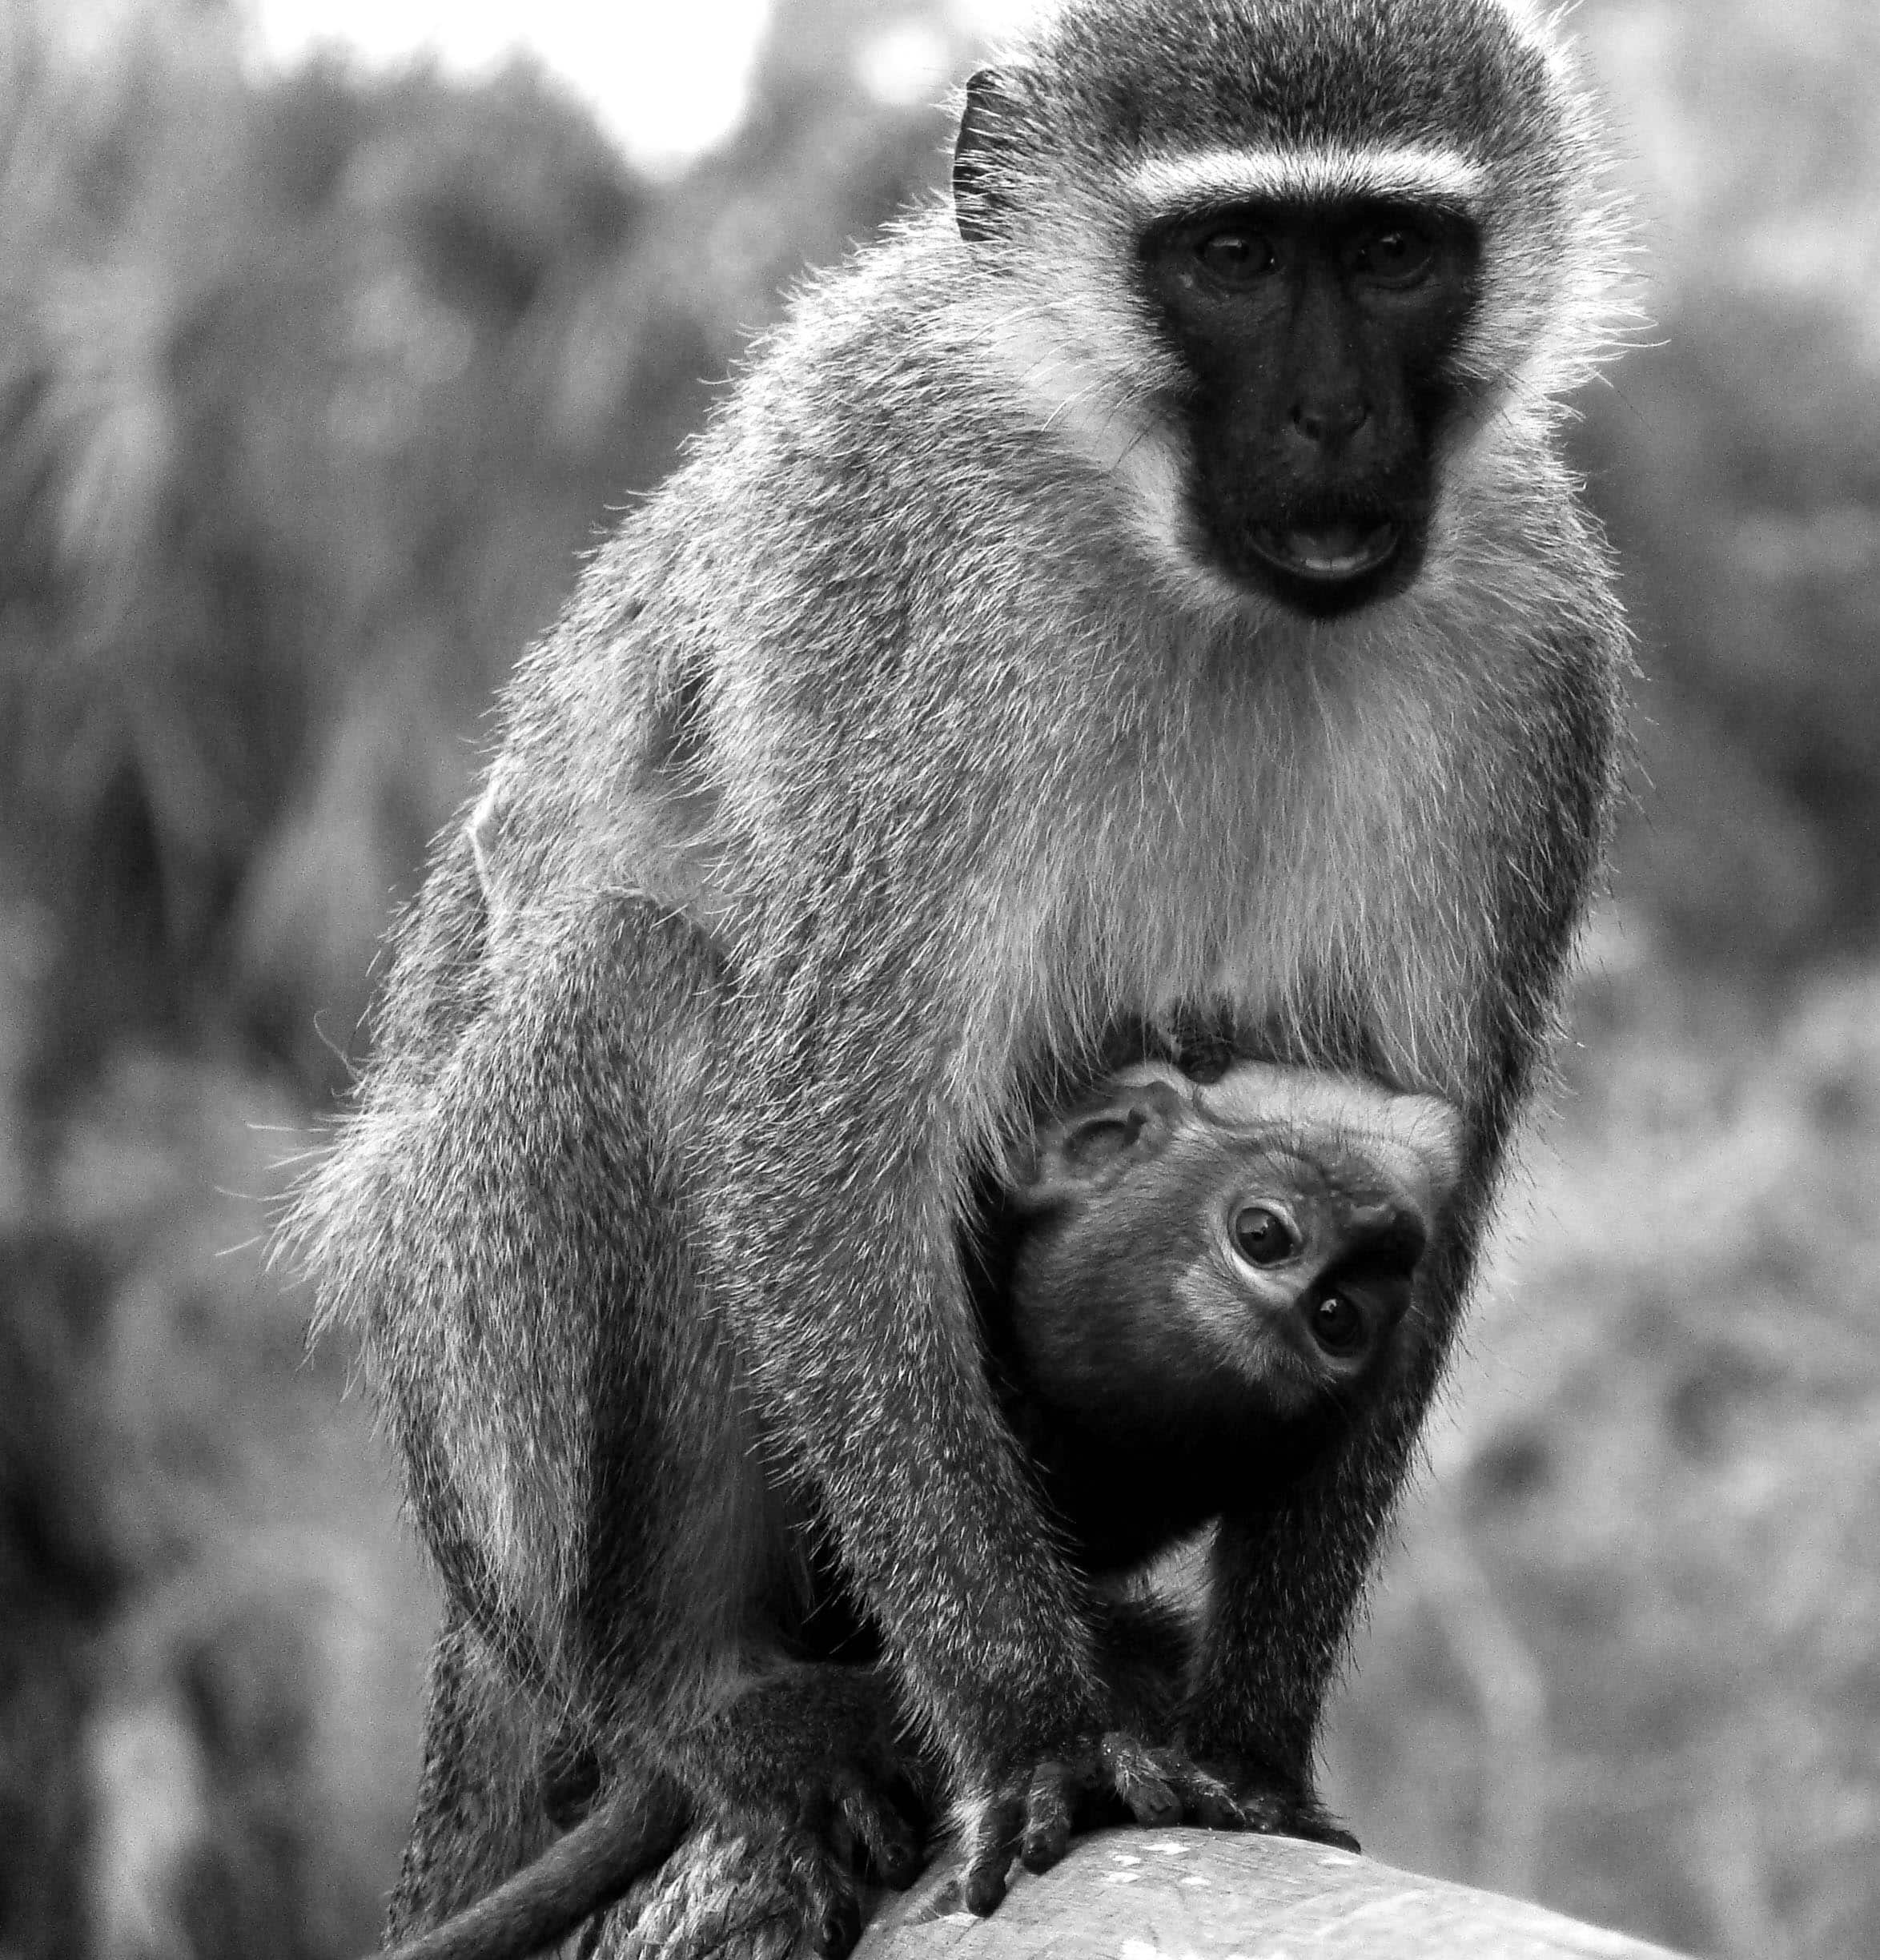 Mom and baby vervet monkeys